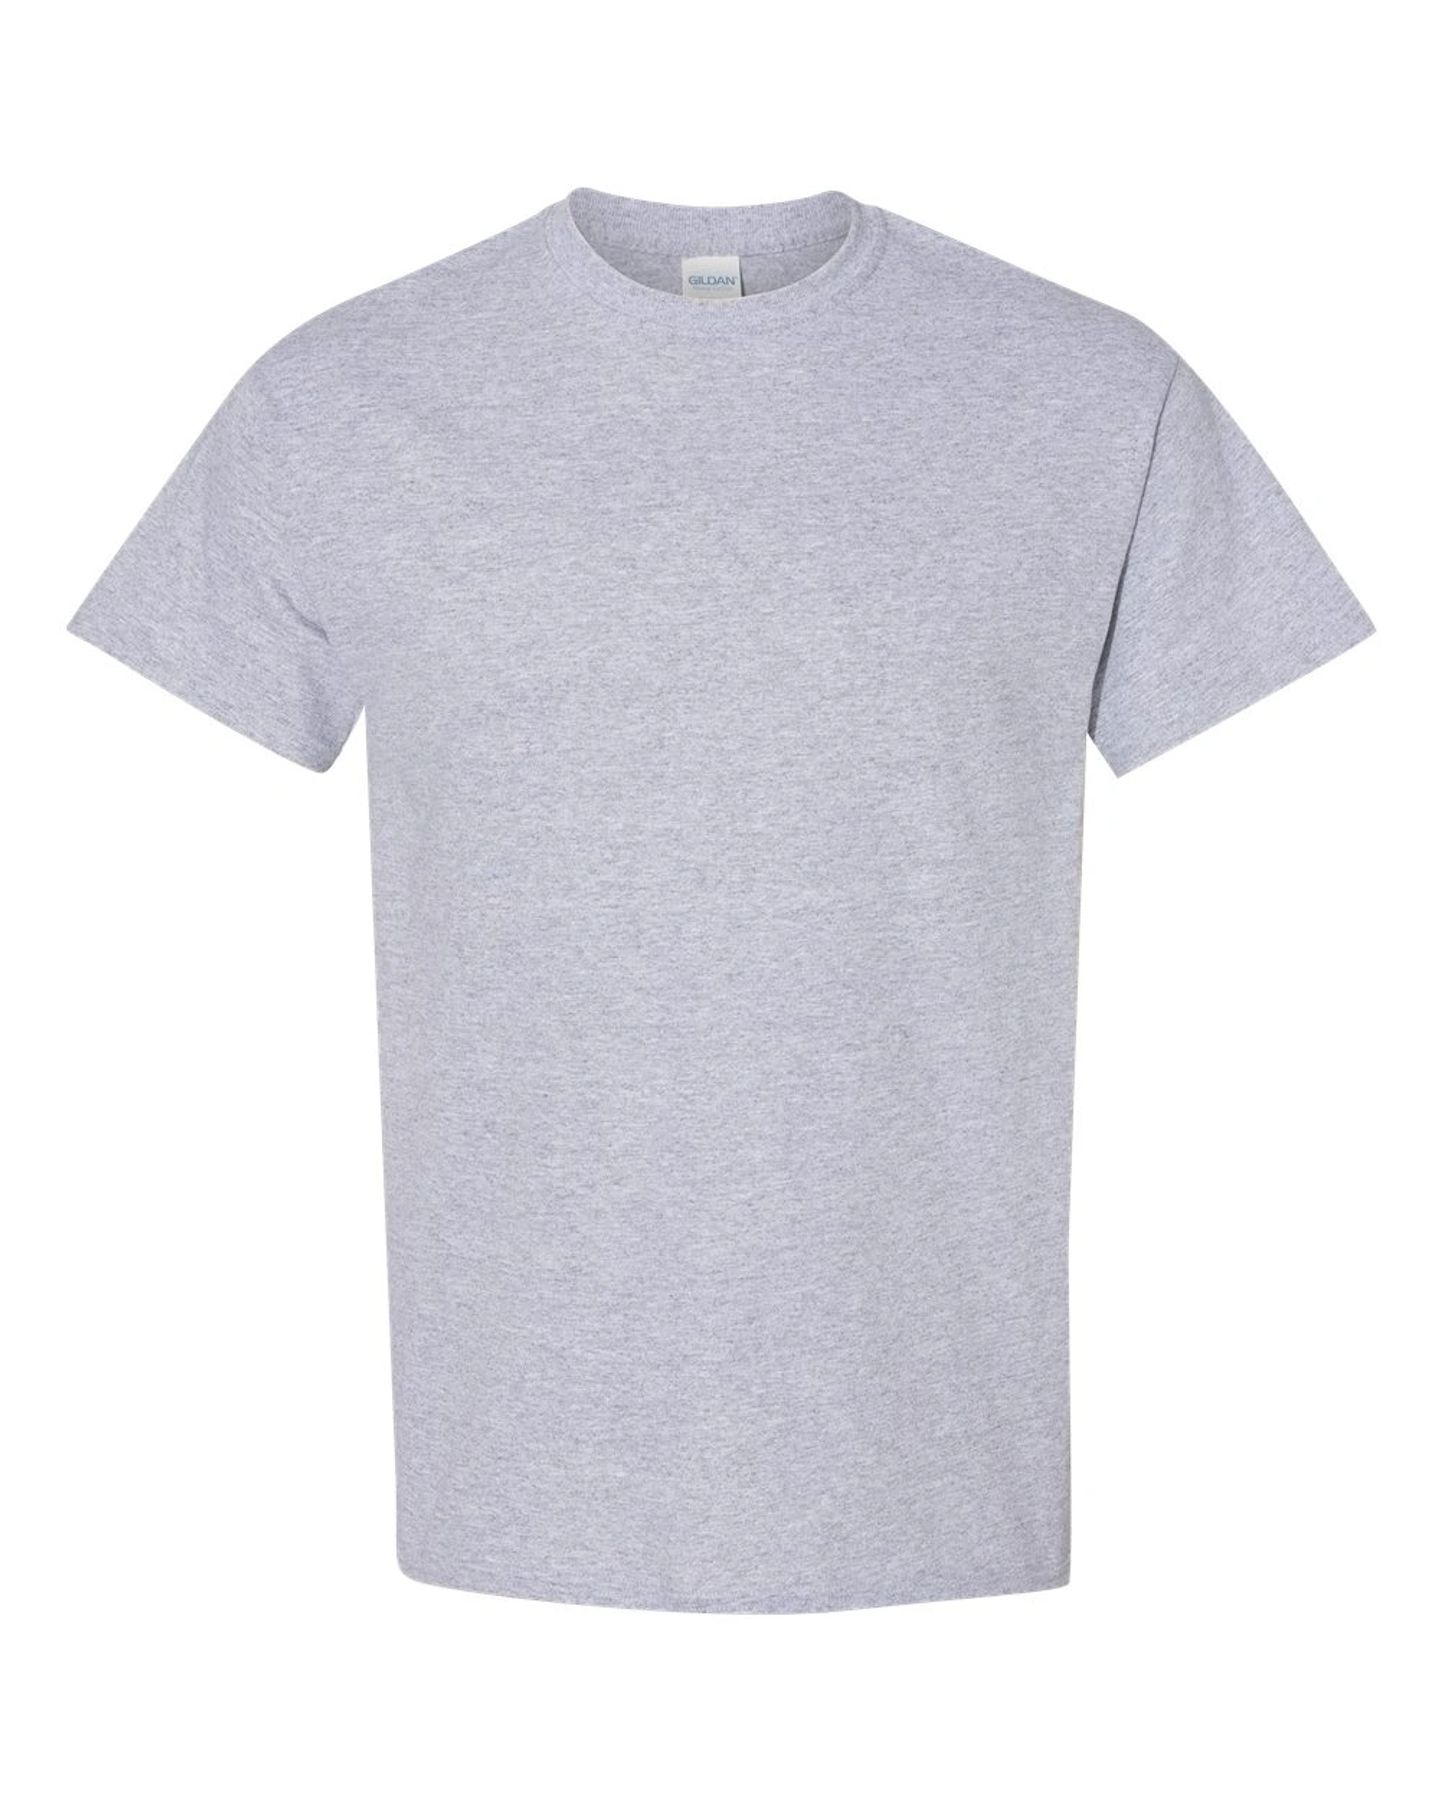 Sport Grey T-Shirt